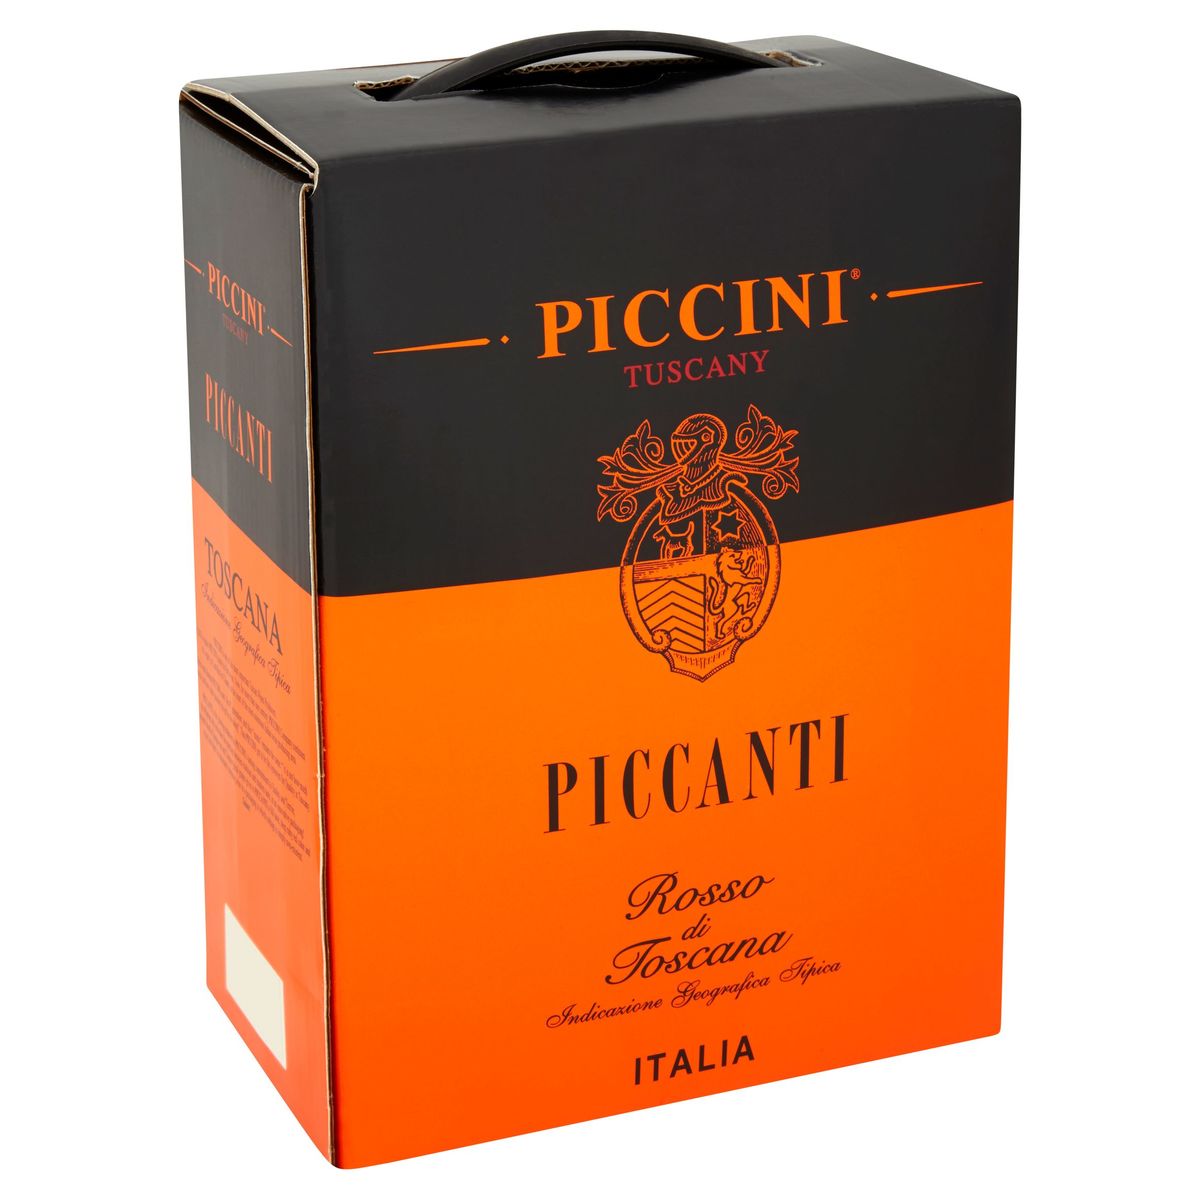 Italie Piccini Tuscany Piccanti rosso di toscana 3000 ml